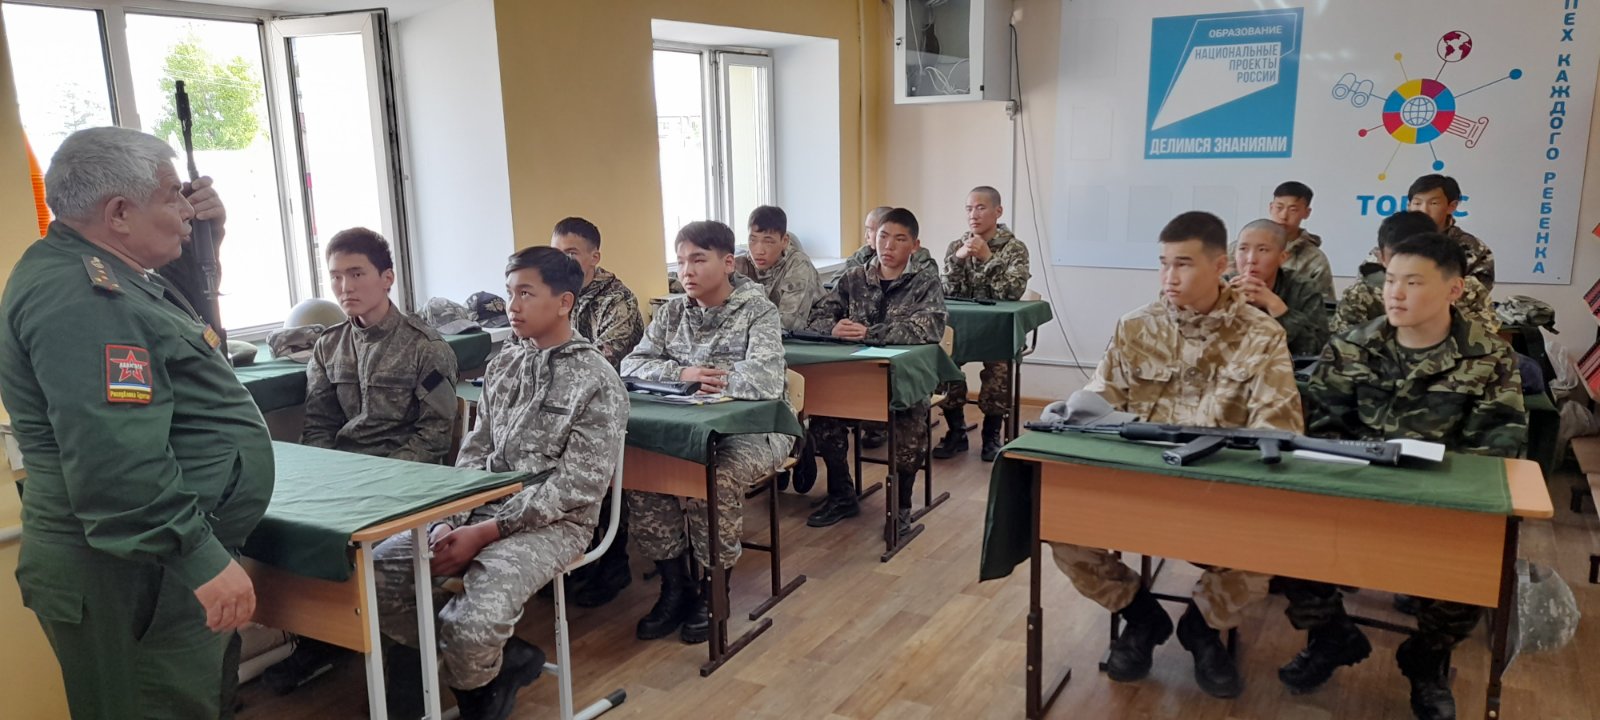 14 школьников из Окинского района Бурятии участвовали в учебных военно-полевых сборах.